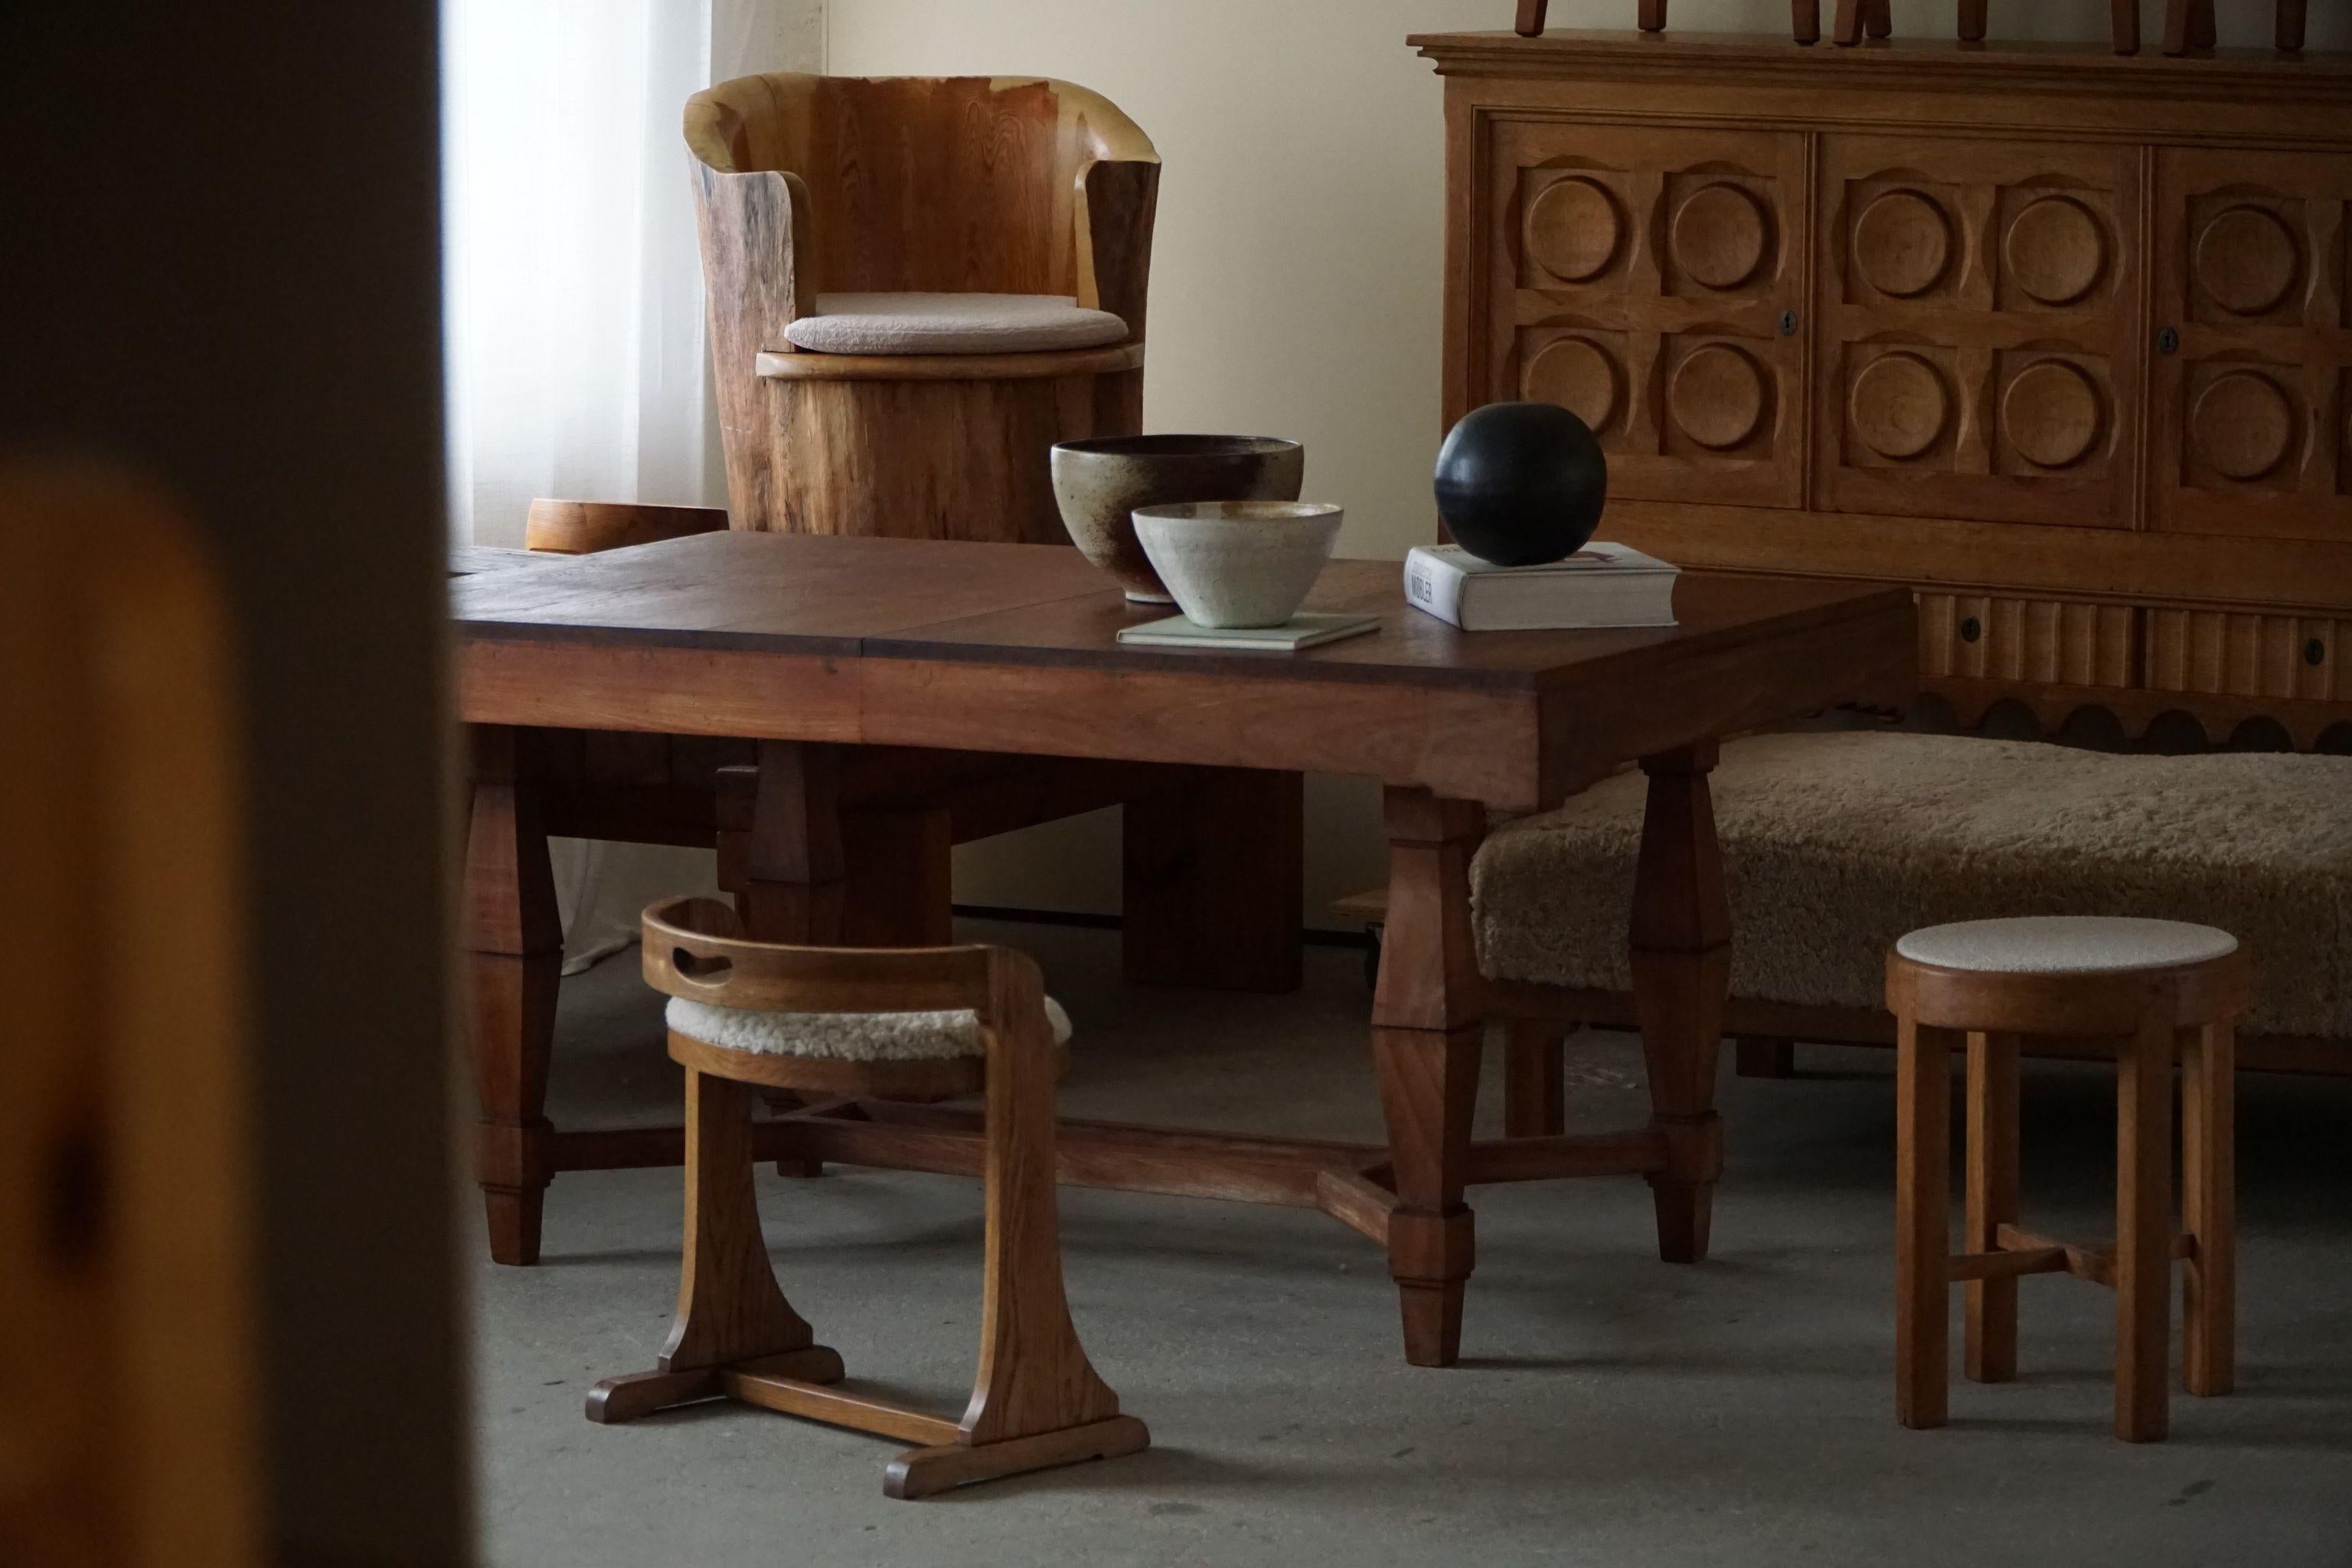 Wir präsentieren einen exquisiten Schminkstuhl mit niedriger Rückenlehne, der in den 1950er Jahren von einem erfahrenen dänischen Tischler gefertigt wurde. Dieser Stuhl ist eine harmonische Kombination aus Raffinesse, Funktionalität und zeitloser